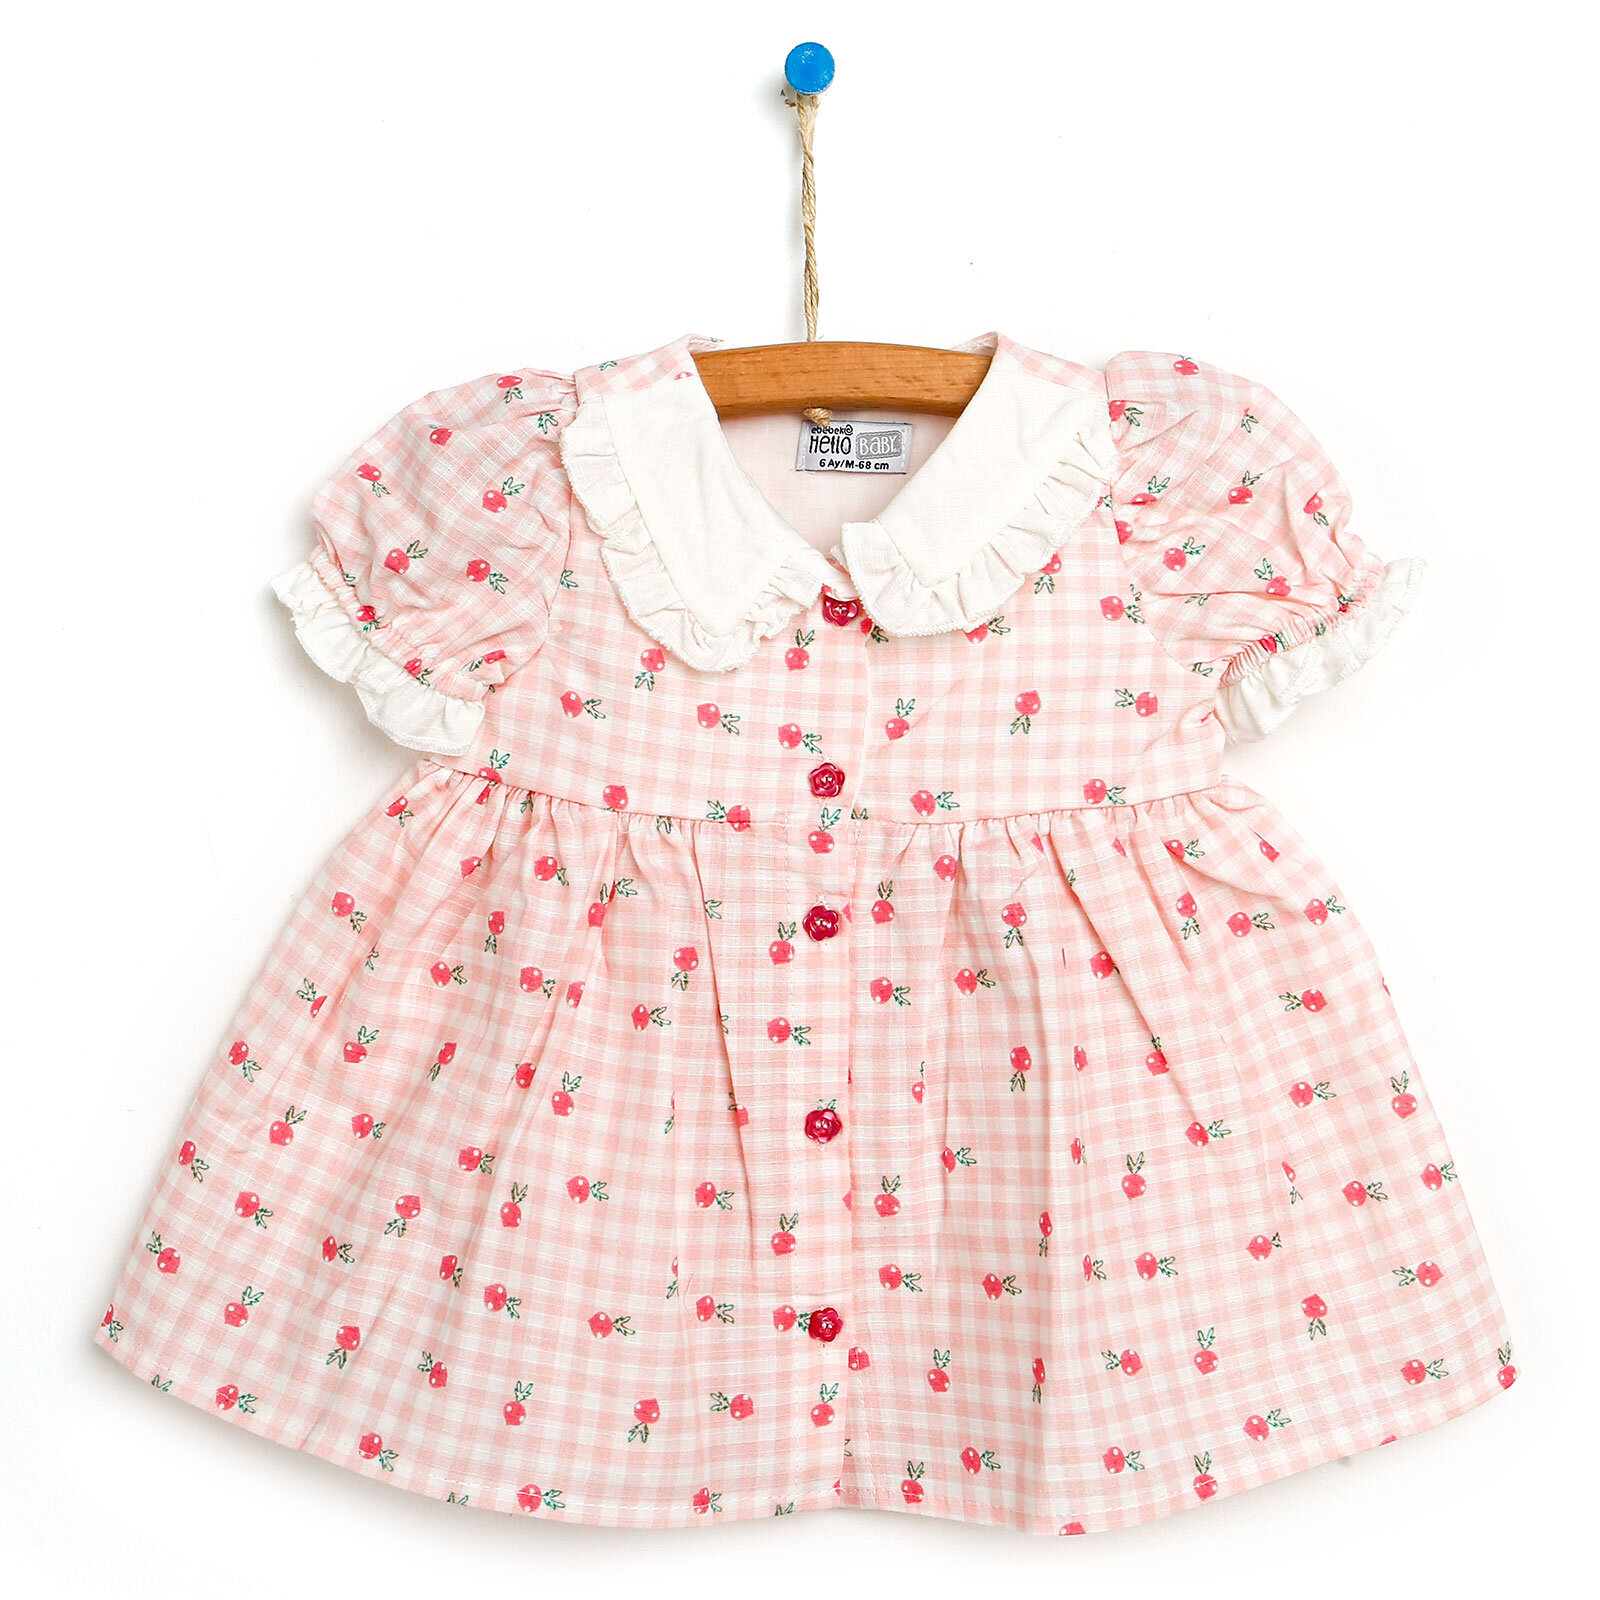 Basic Kız Bebek Pötikareli Desenli Elbise Kız Bebek